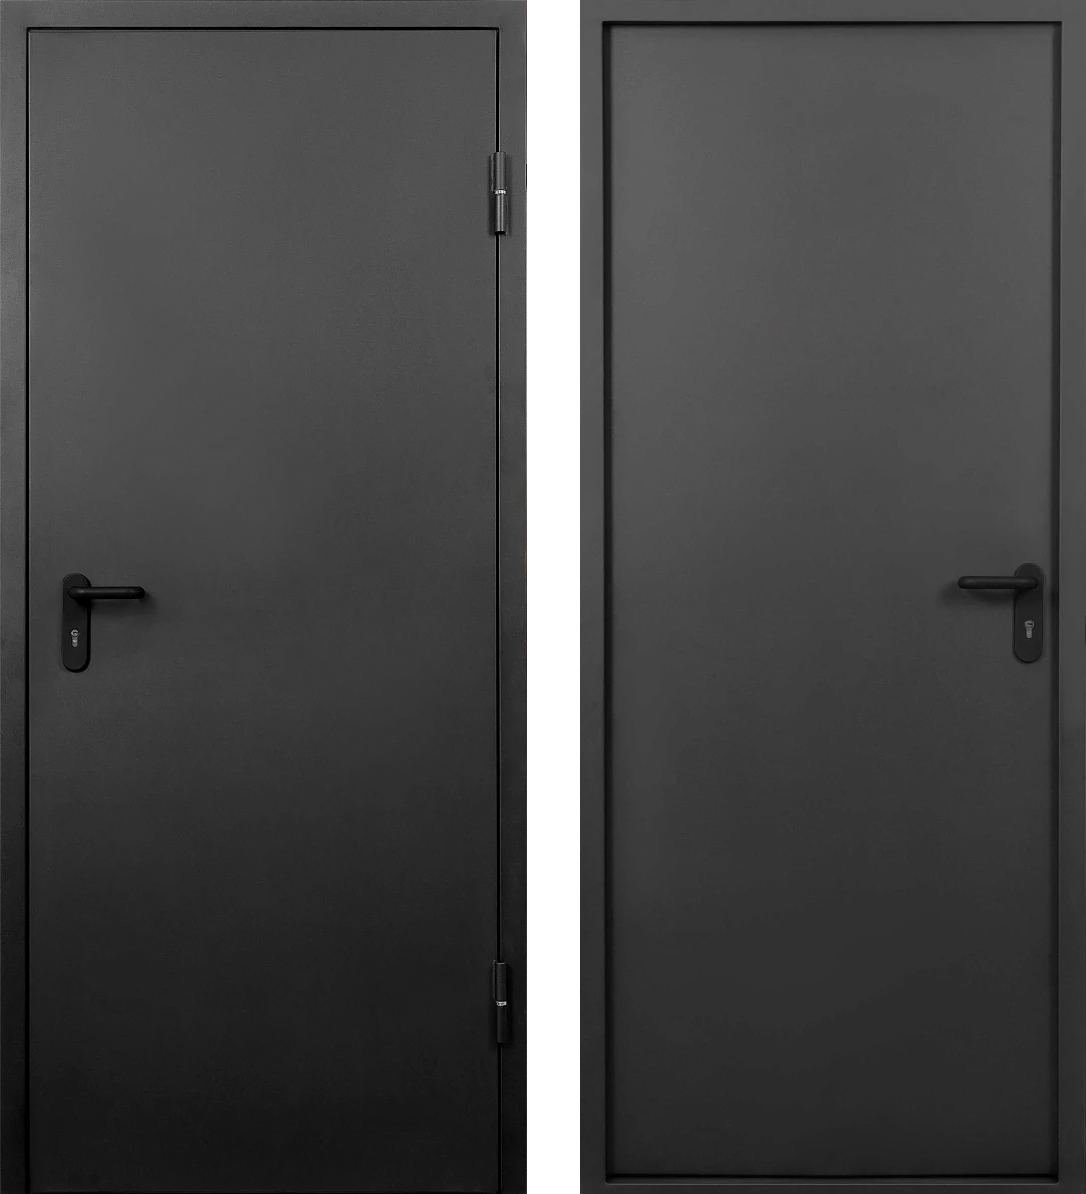 Противопожарная одностворчатая дверь ДПМ eis-60 ЛД-812 с антипаникой/глухая (дымогазонепроницаемая)